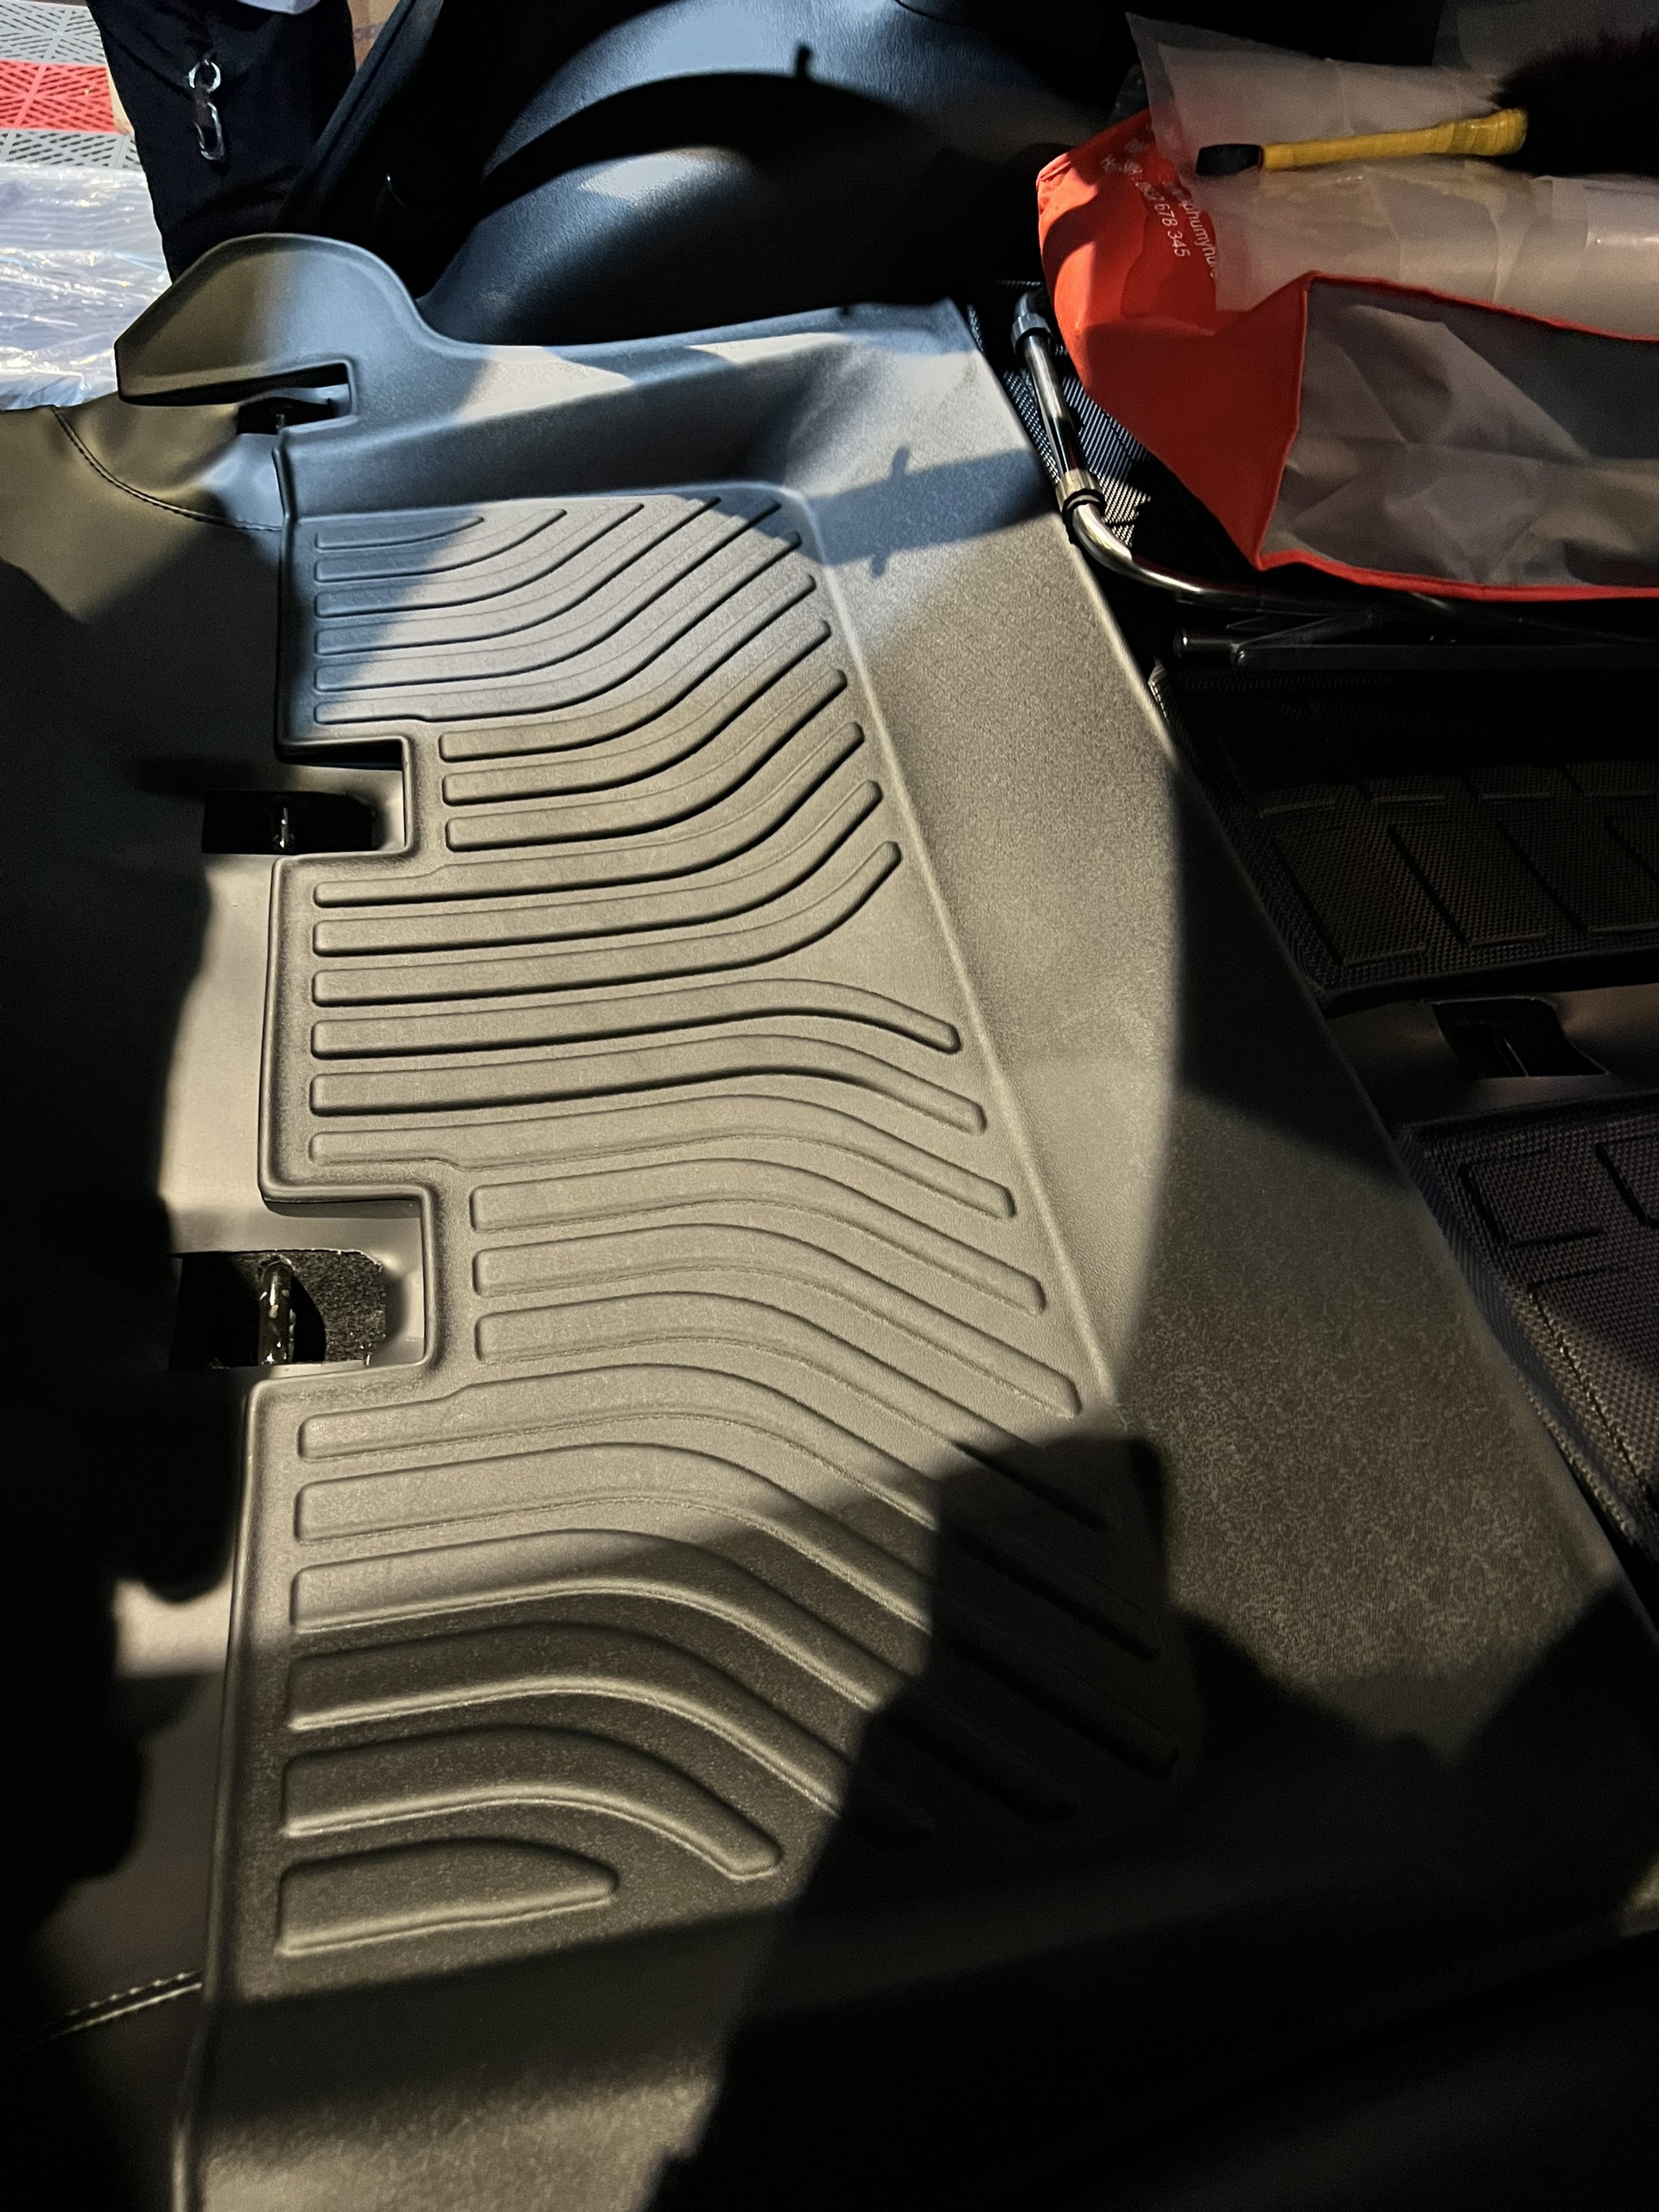 Thảm lót sàn xe ô tô Toyota Fortuner 2017-2022 tới nay Nhãn hiệu Macsim chất liệu nhựa TPE cao cấp màu đen